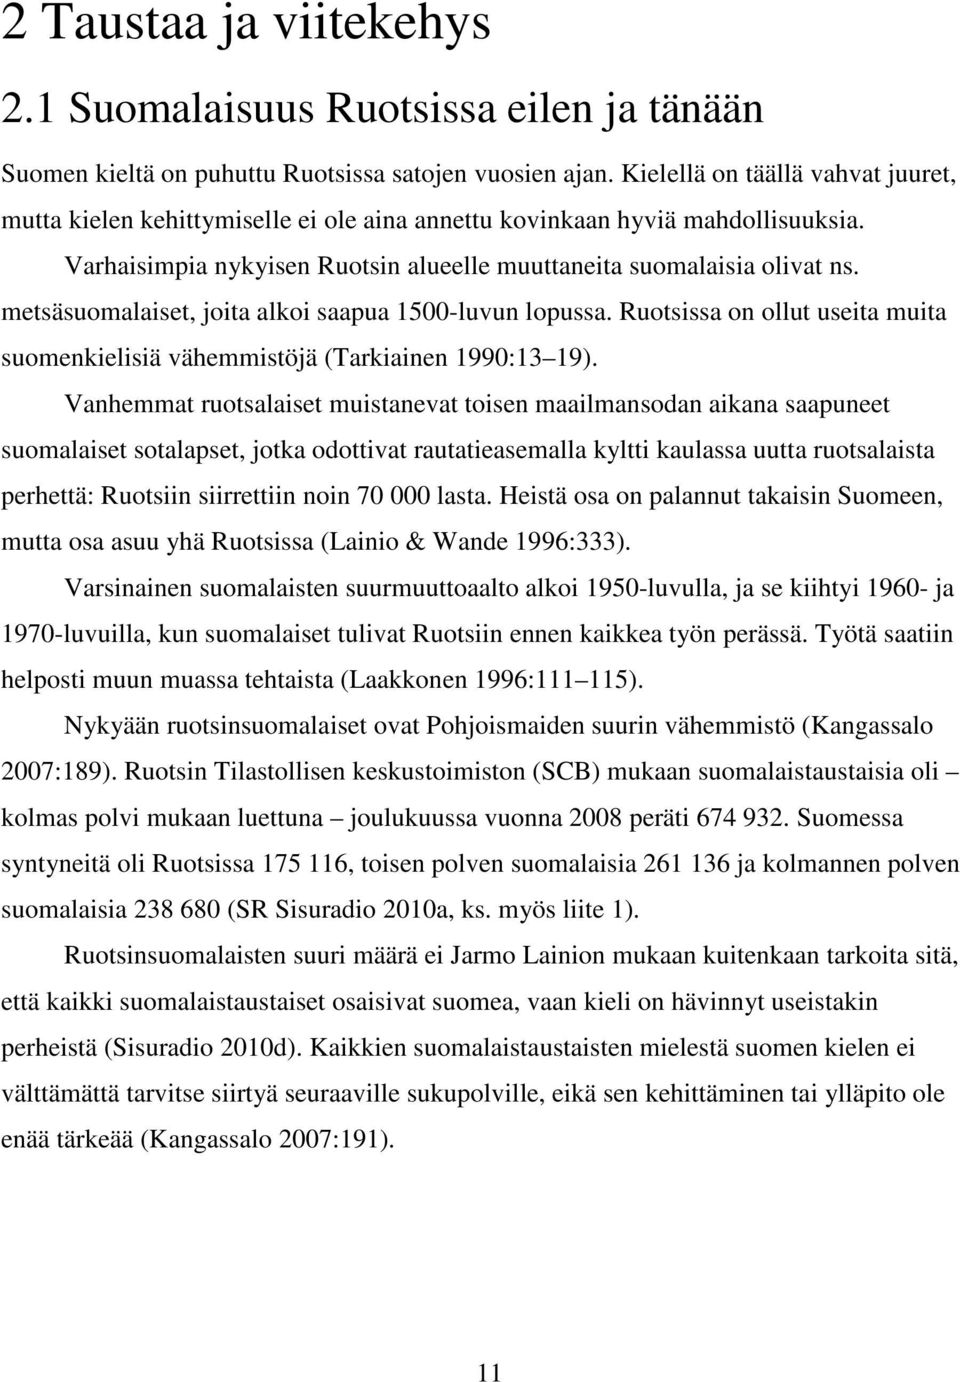 metsäsuomalaiset, joita alkoi saapua 1500-luvun lopussa. Ruotsissa on ollut useita muita suomenkielisiä vähemmistöjä (Tarkiainen 1990:13 19).